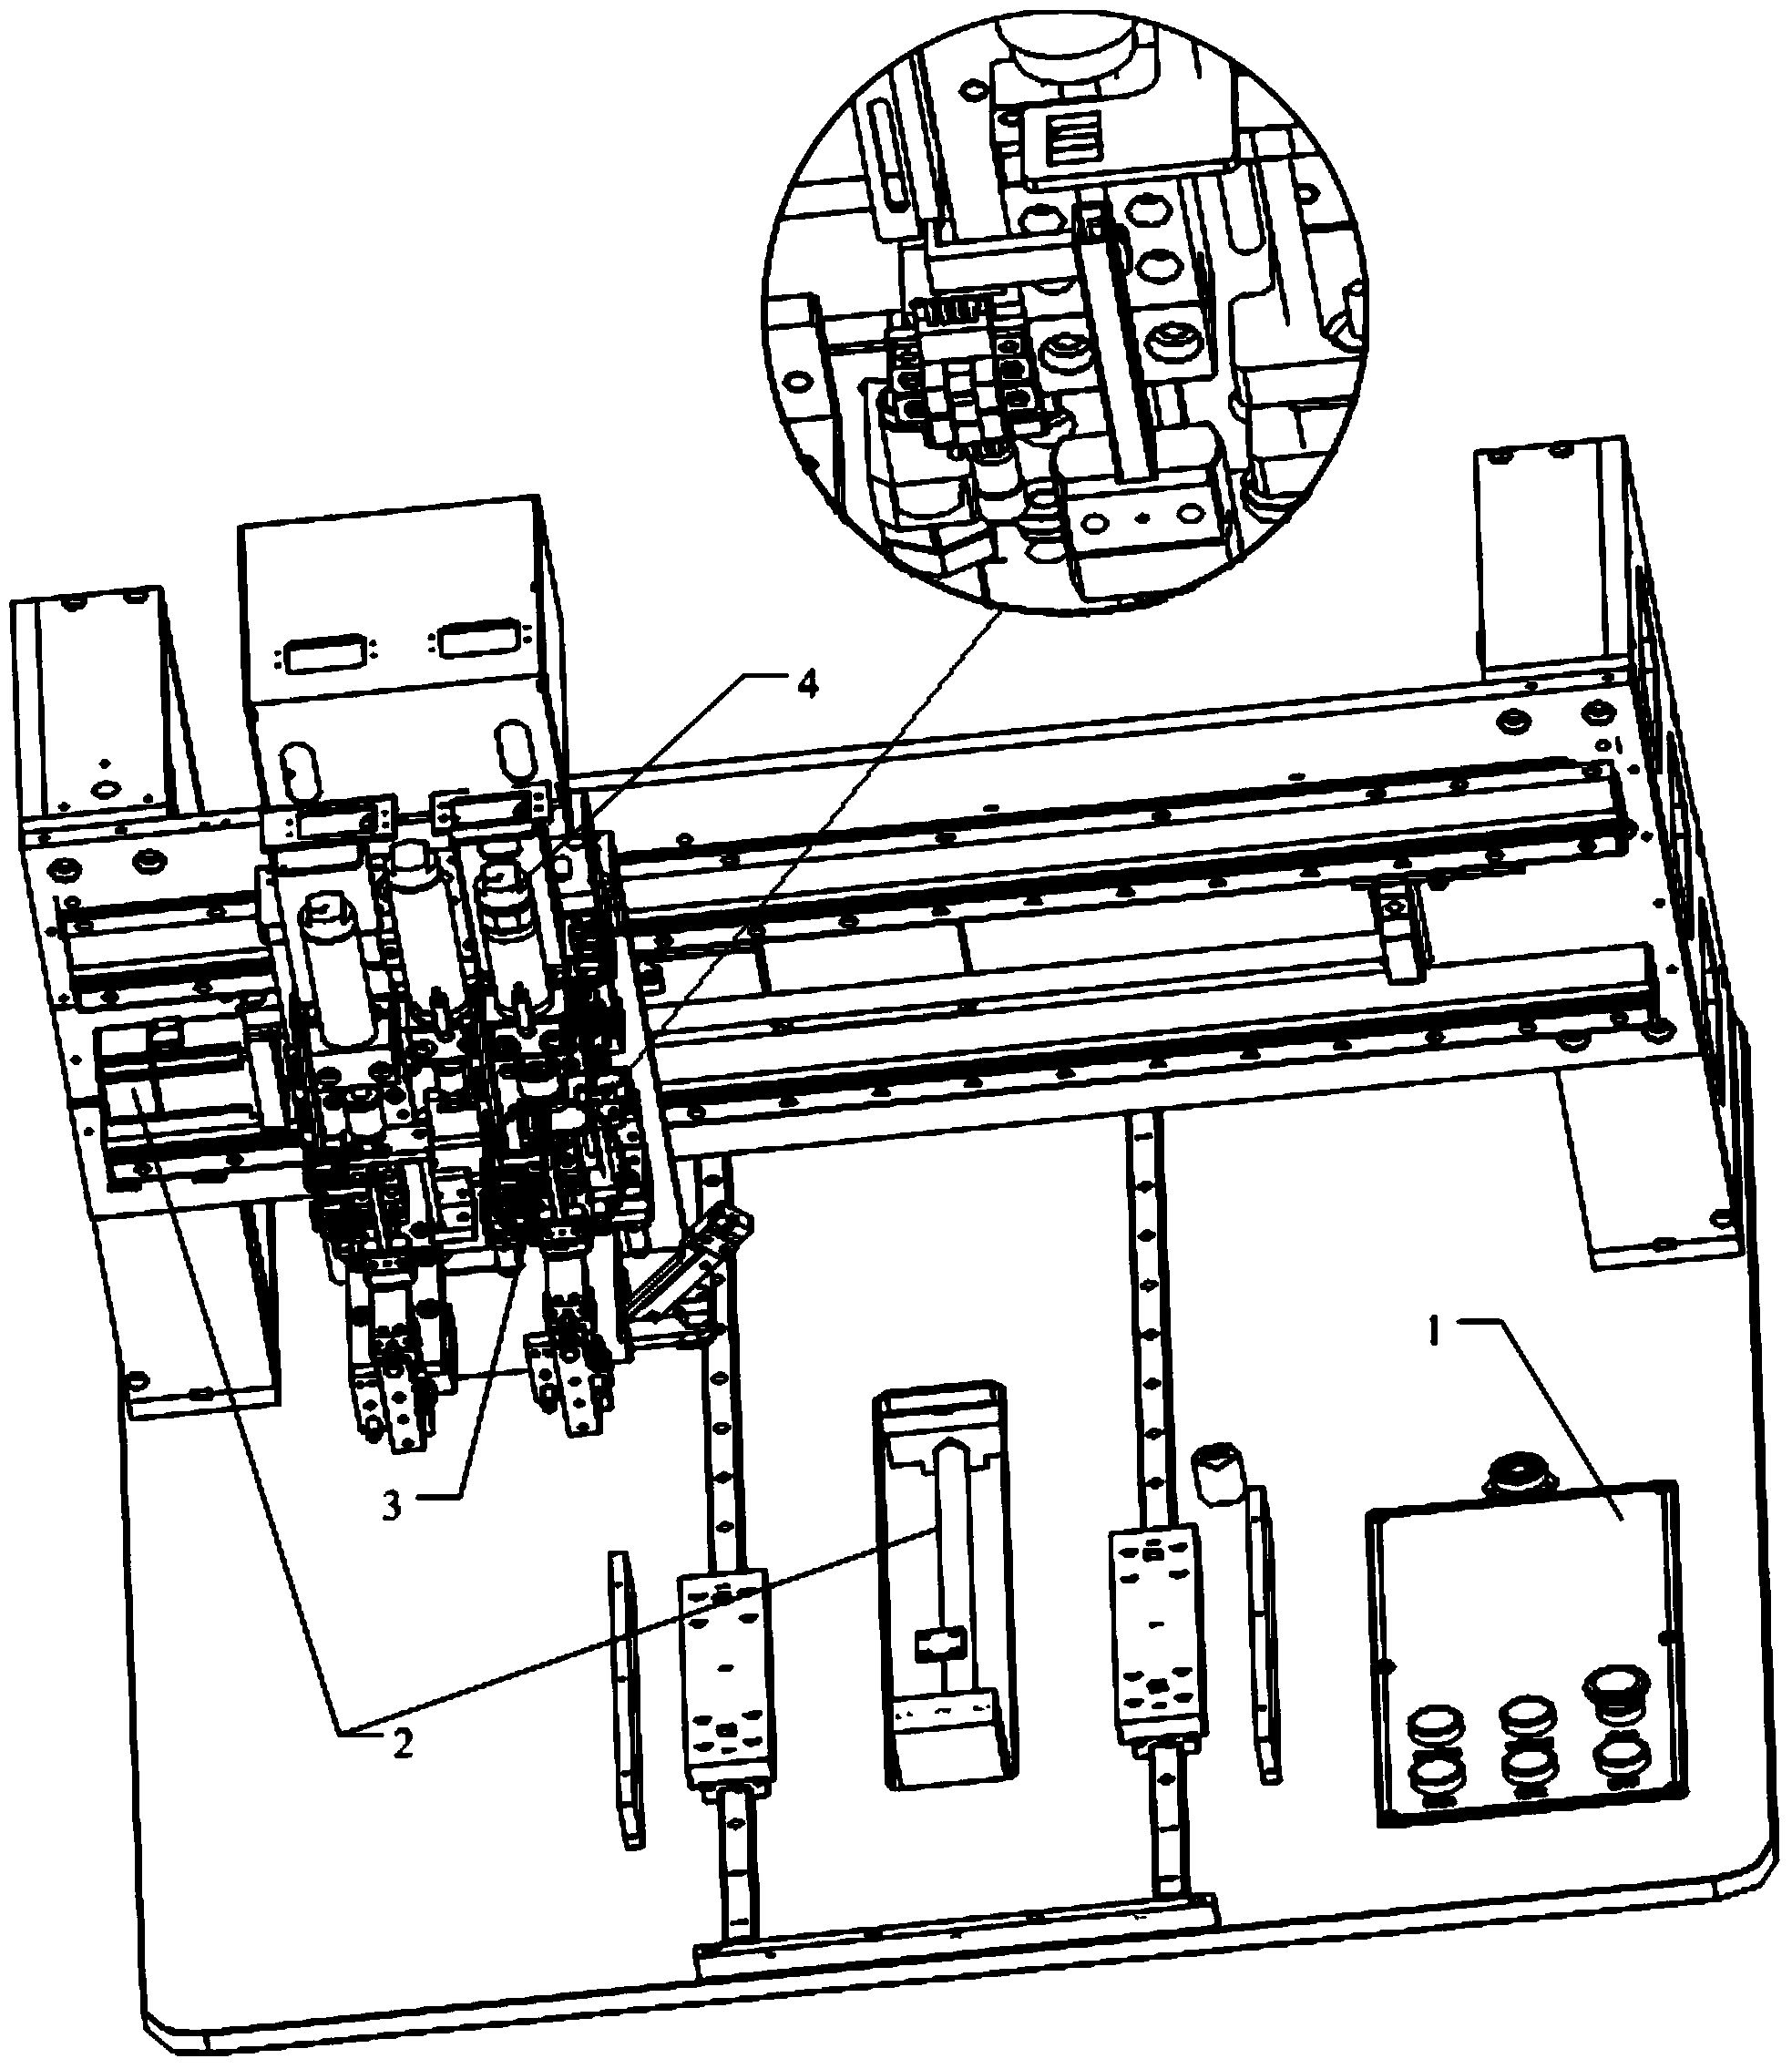 Automatic copper column pressing machine